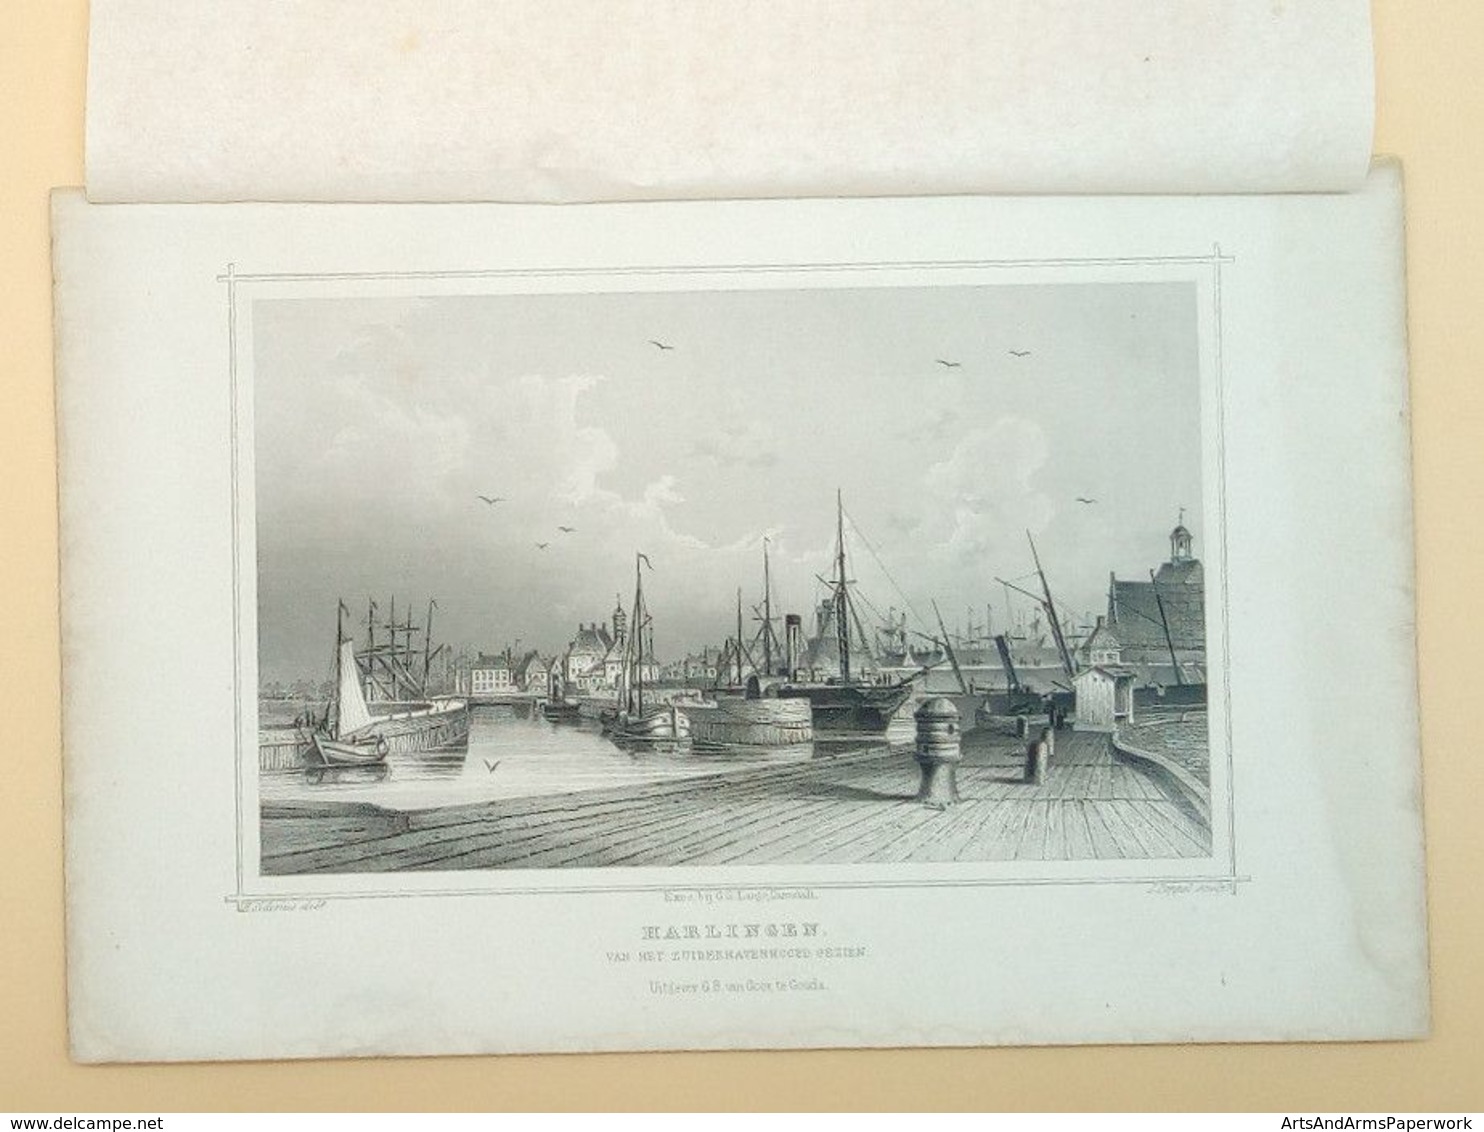 Harlingen Van Het Zuiderhavenhoofd Gezien 1858/ Harlingen (NL), Seen From The Zuiderhavenhoofd 1858. Siderius, FRIESLAND - Art